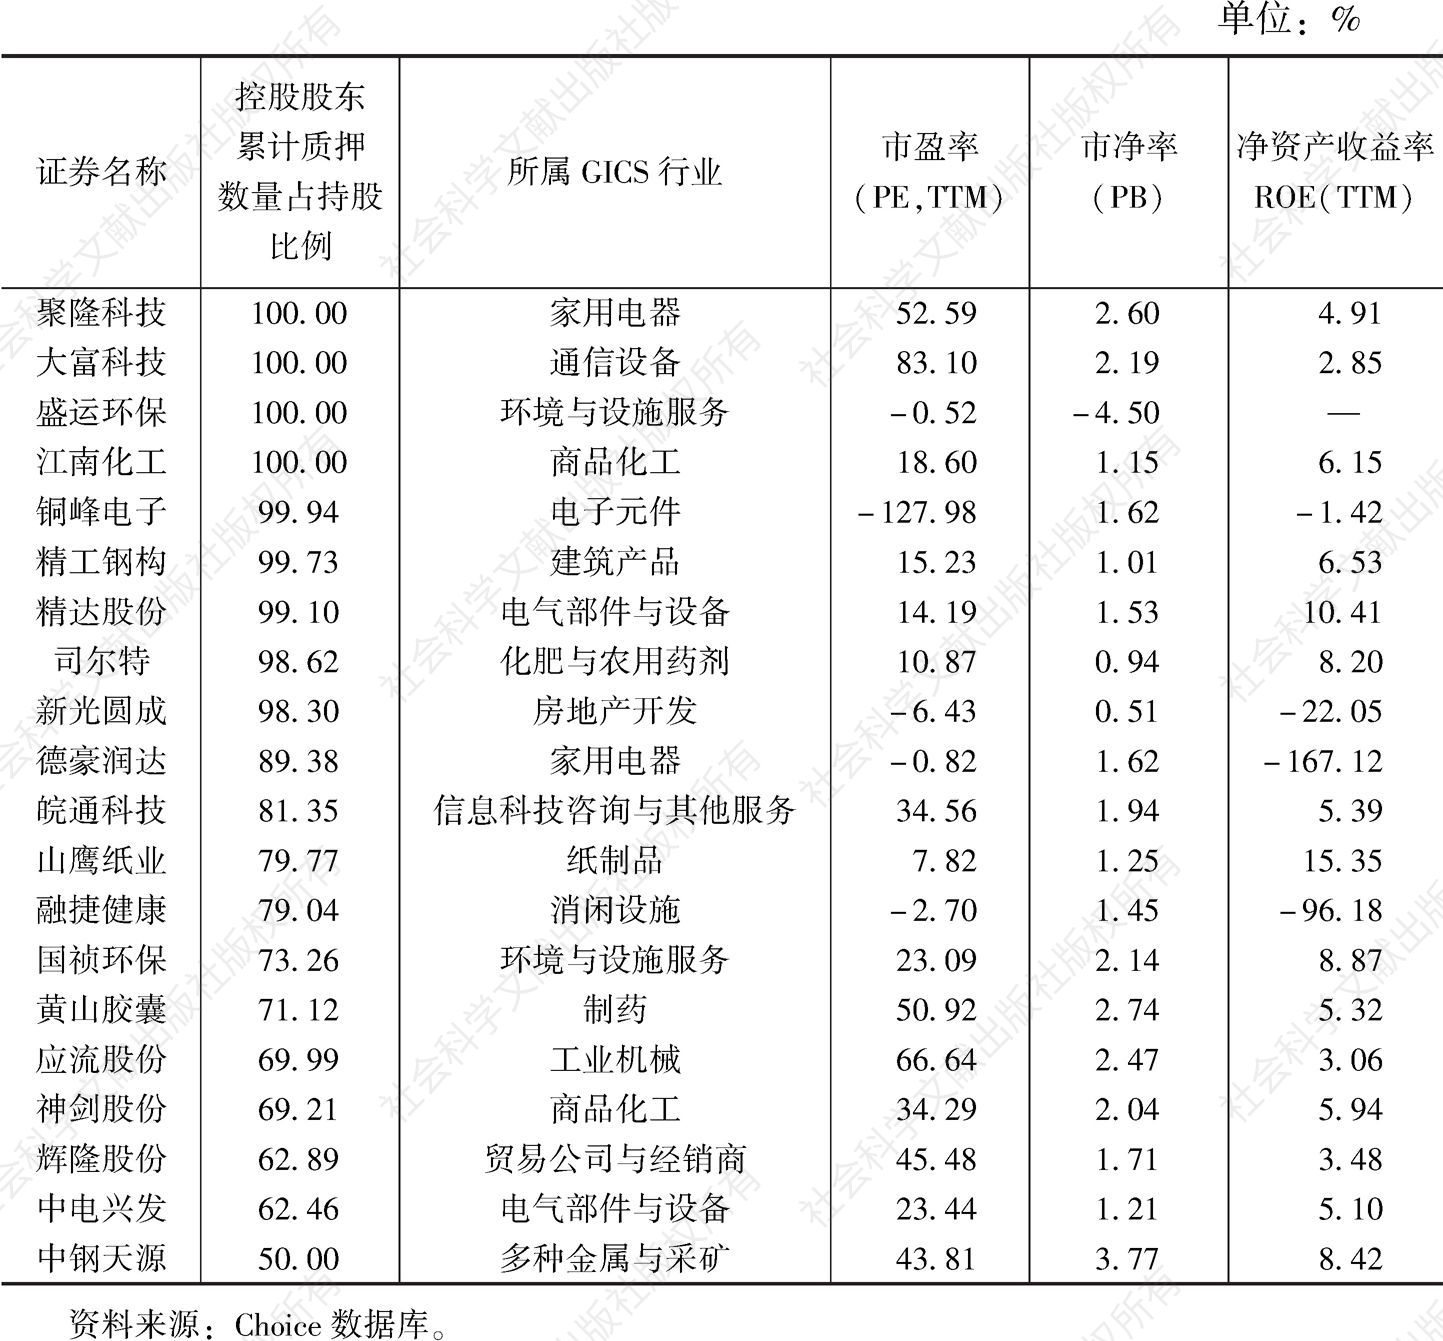 表7 安徽上市公司中大股东质押比例超过50%和80%的公司名单（截至2019年12月31日）